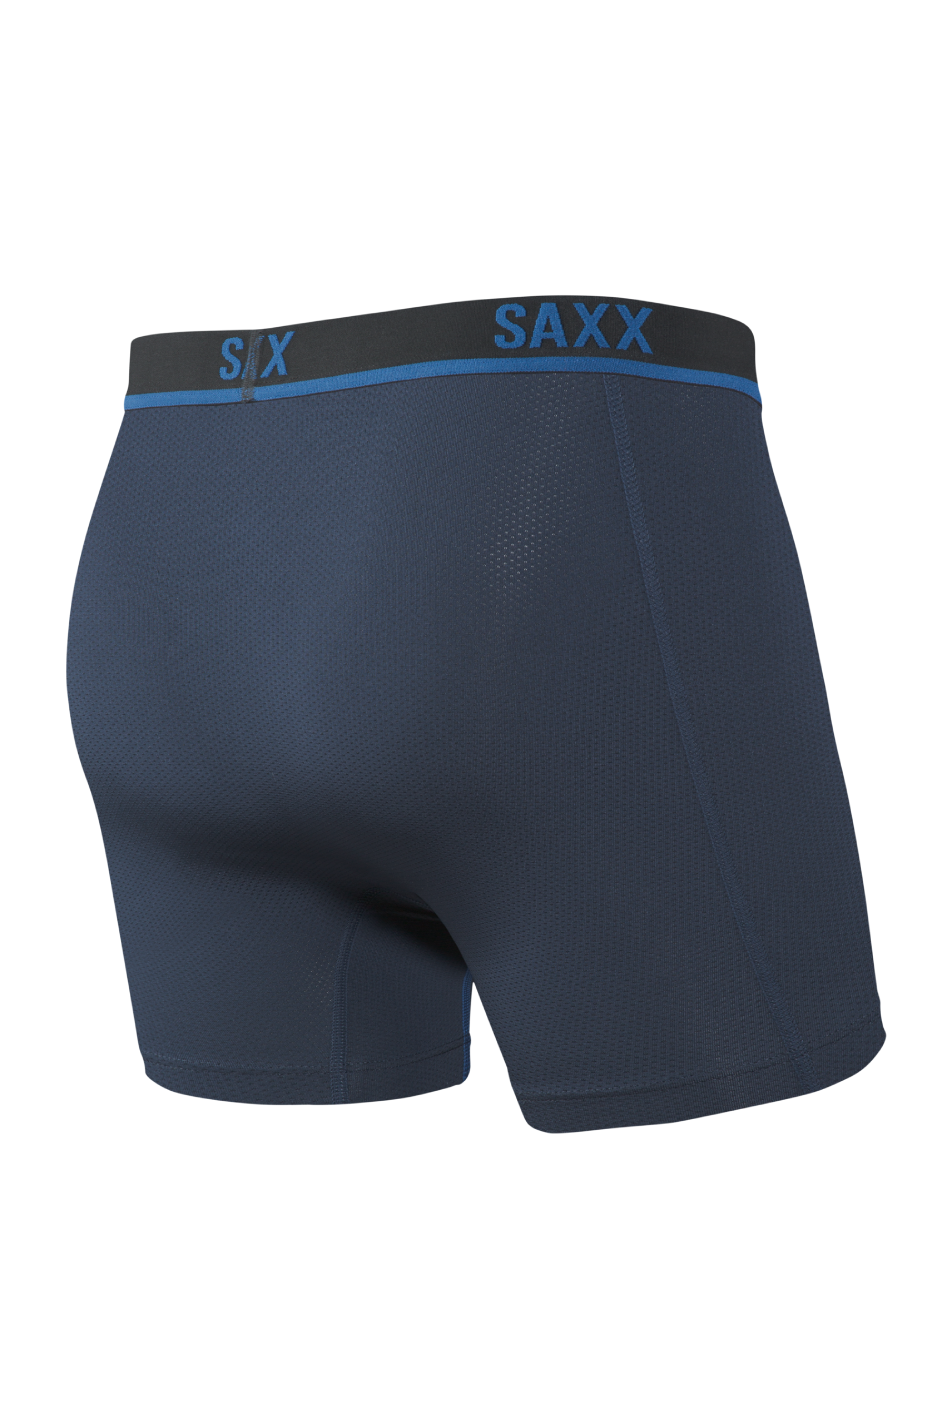 SAXX Kinetic HD Men's Boxer Brief